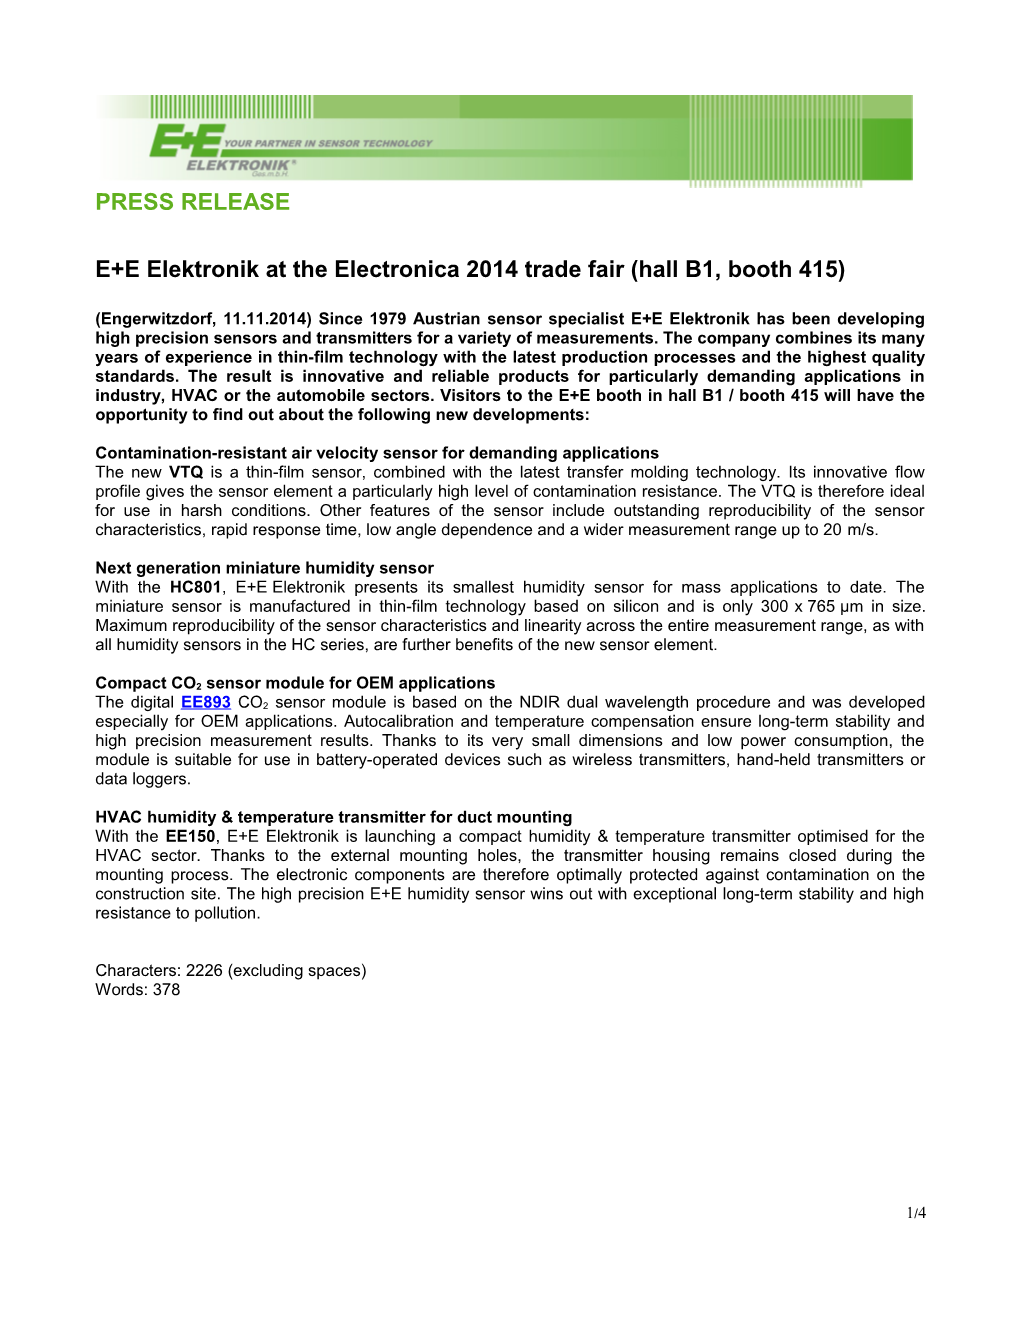 E+E Elektronik at the Electronica 2014 Trade Fair (Hall B1, Booth415)